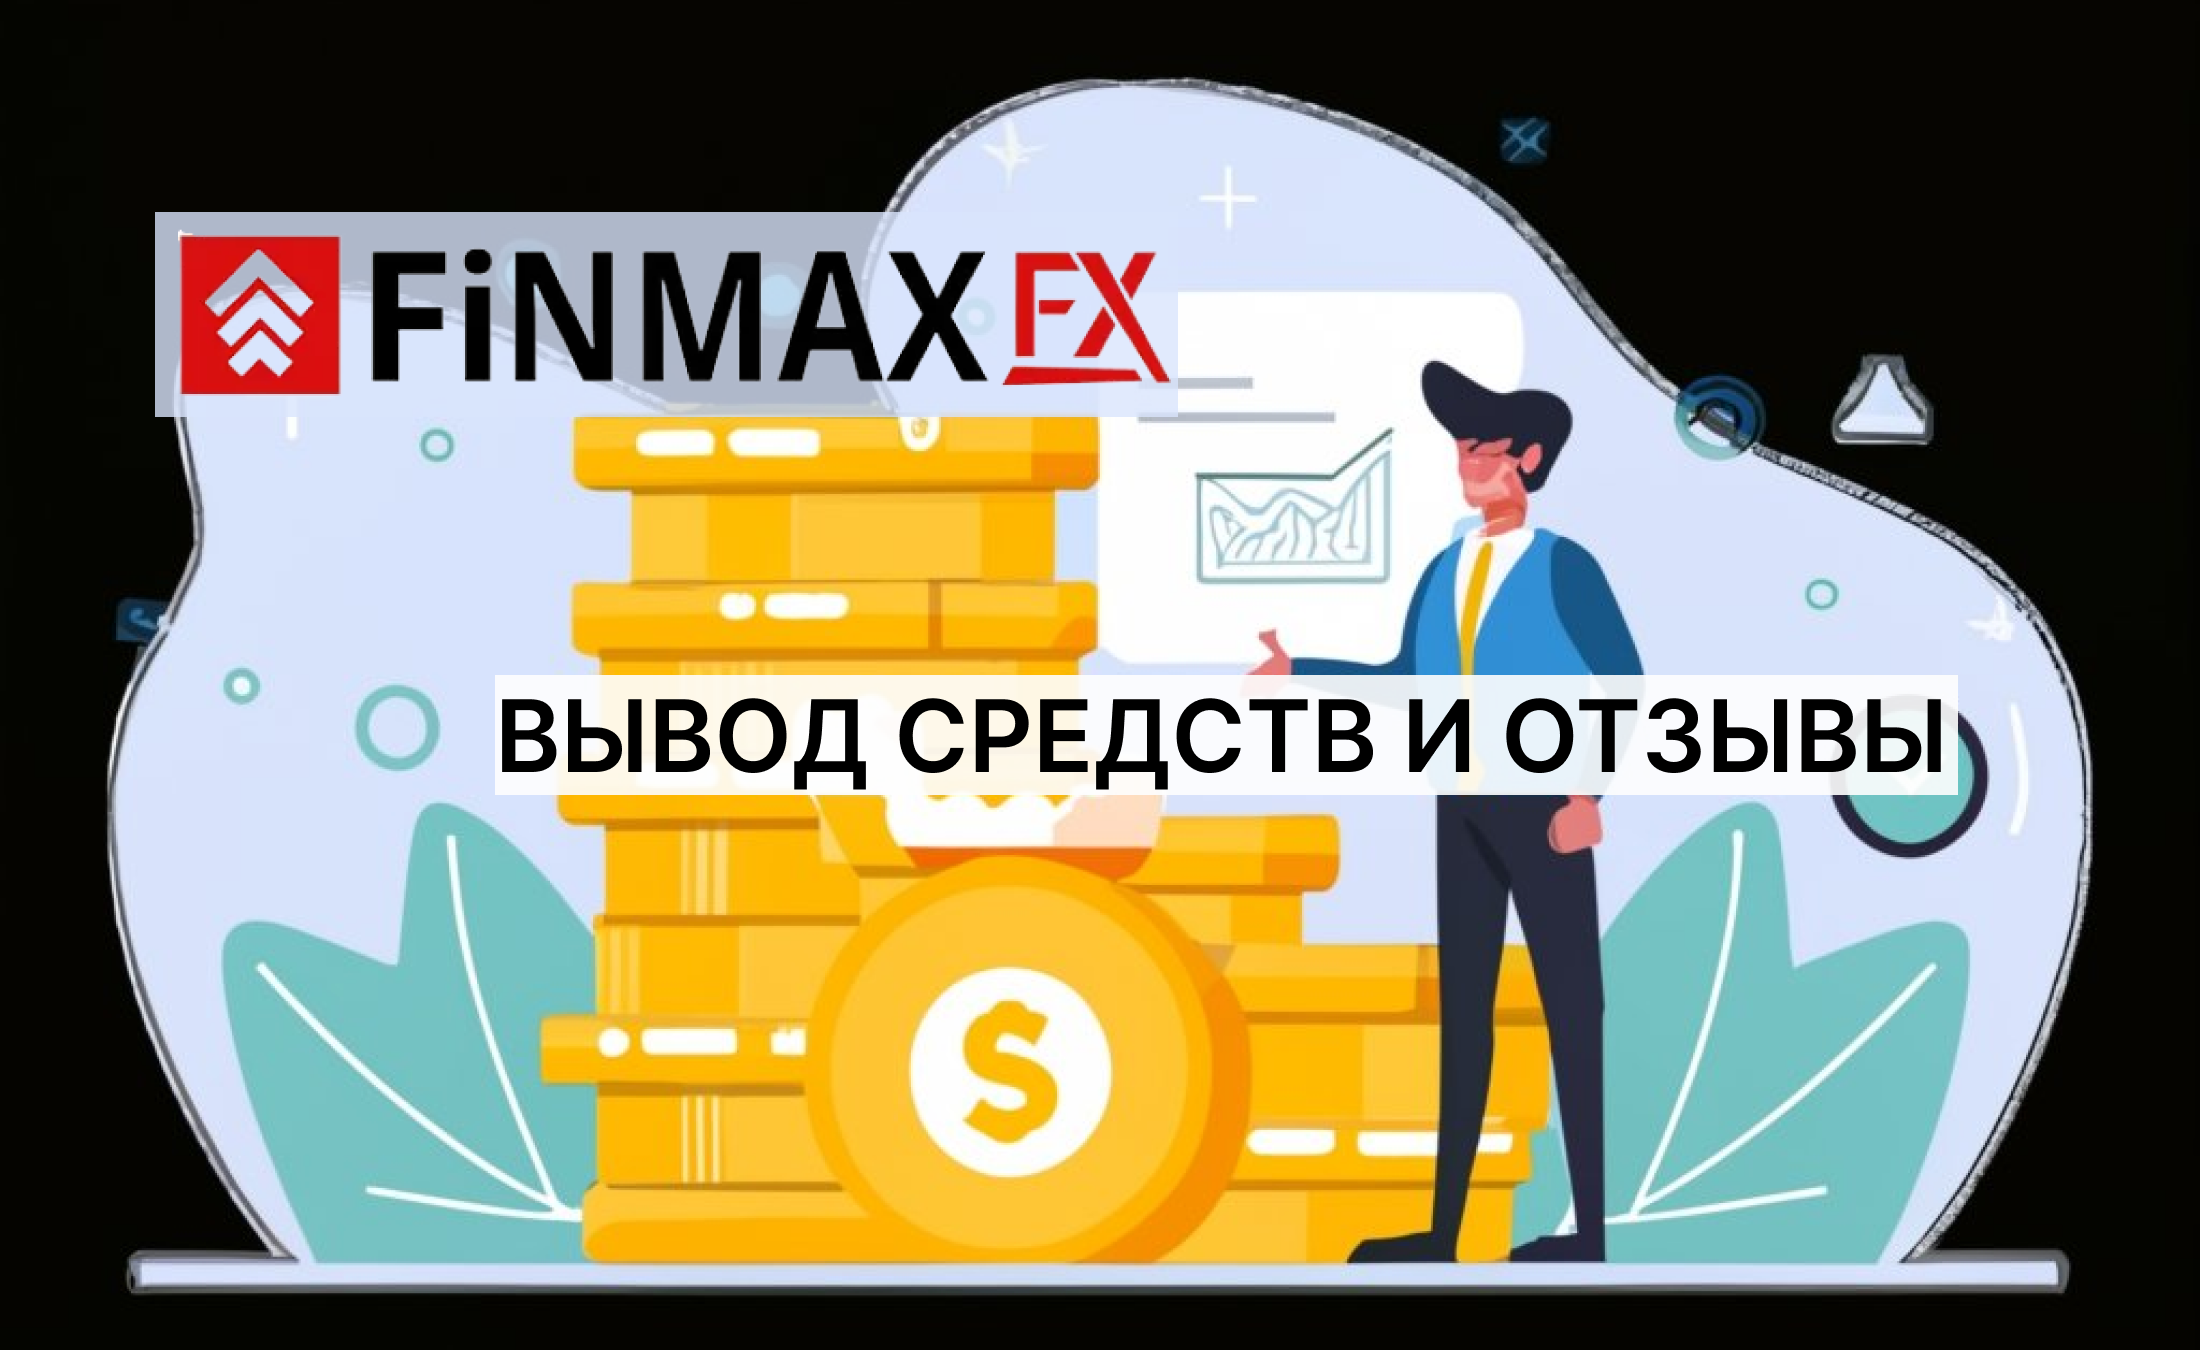 FinmaxFX вывод средств и отзывы